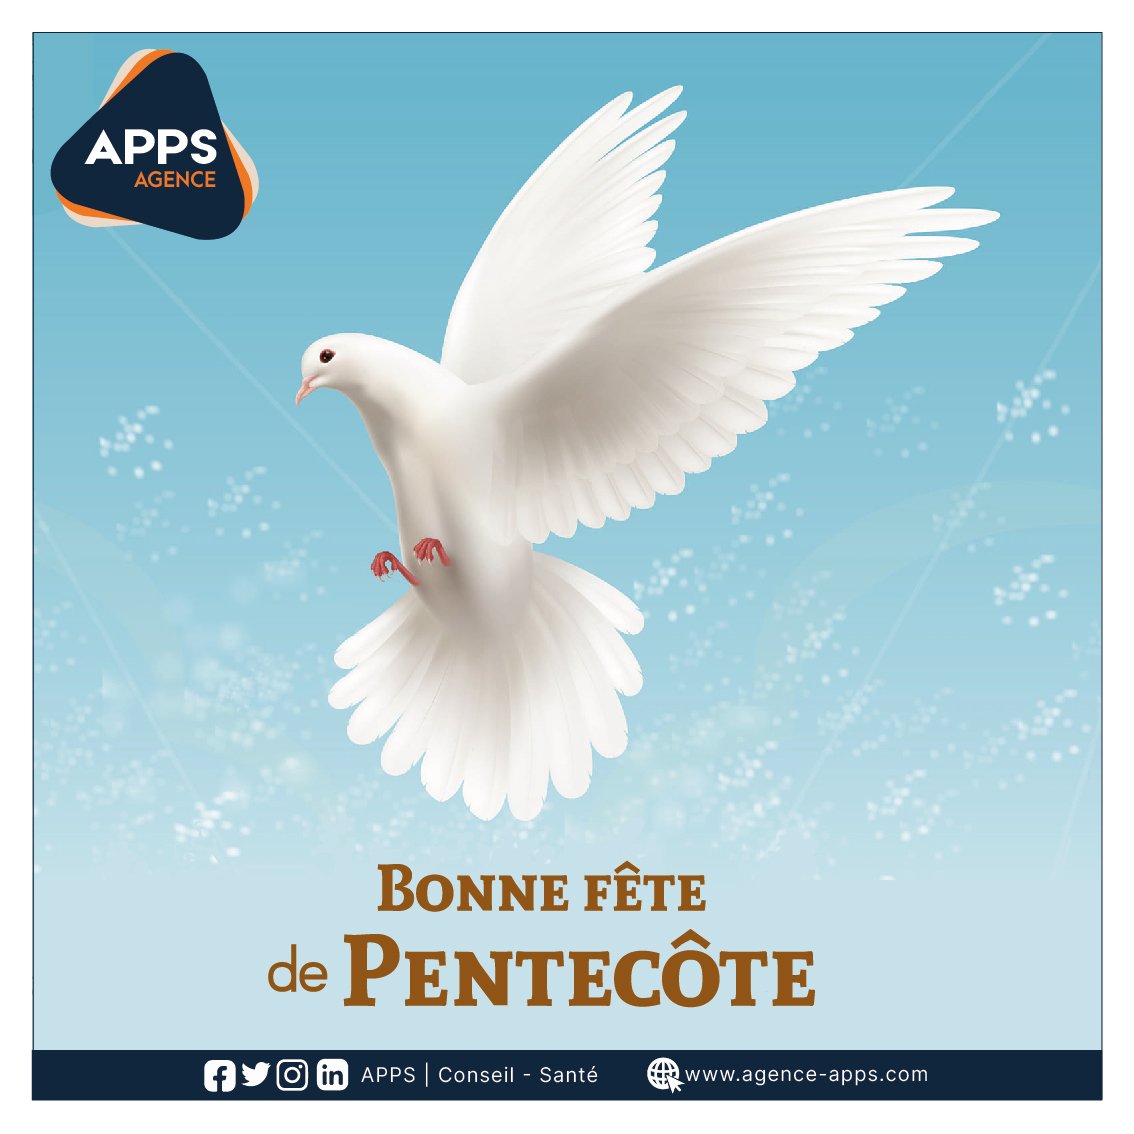 Bonne fête de la Pentecôte à tous. 
. 
. 
. 
#Bonnepentecote #weekend #pentecote #motivation
#appsbenin #marketing #team229 #promotiomédicale #agenceapps